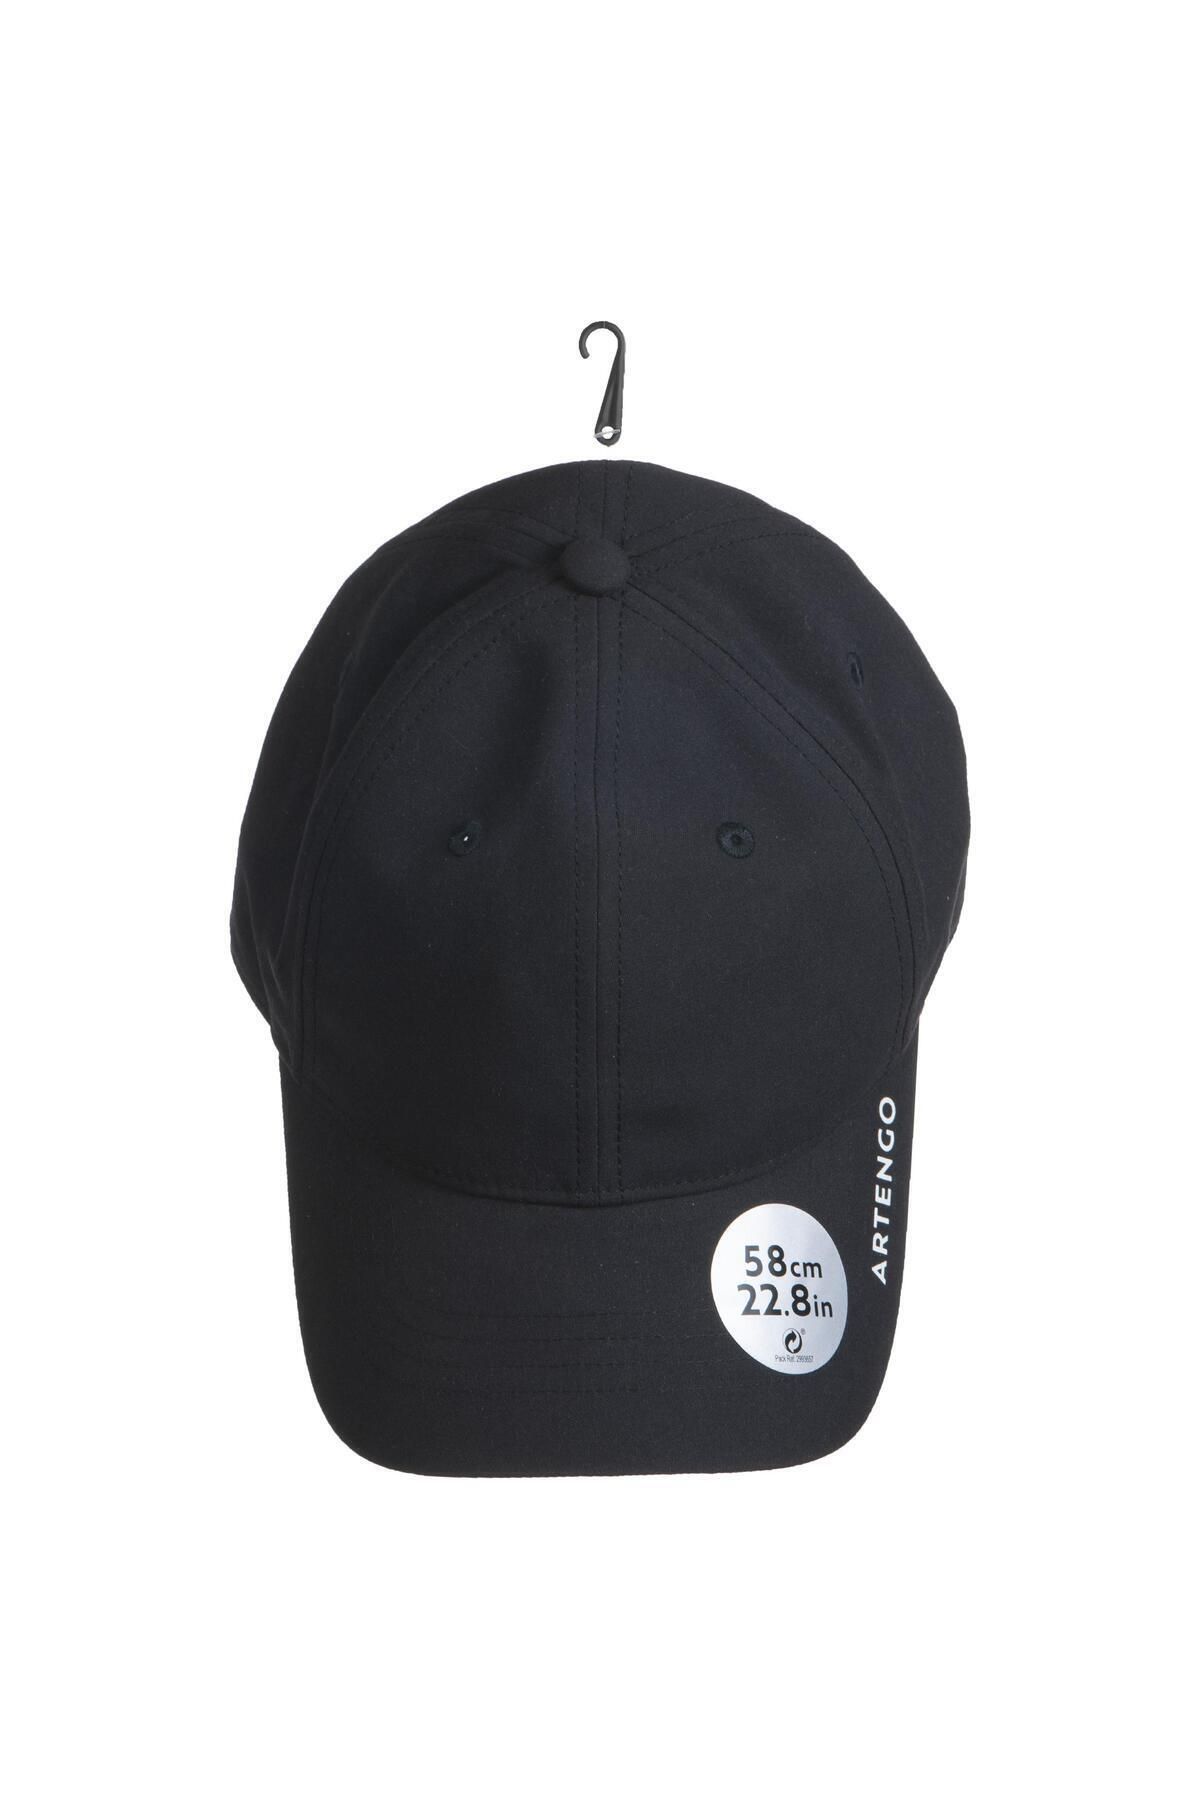 Decathlon Artengo Tenis Şapkası - 58 Cm - Siyah - Tc 500